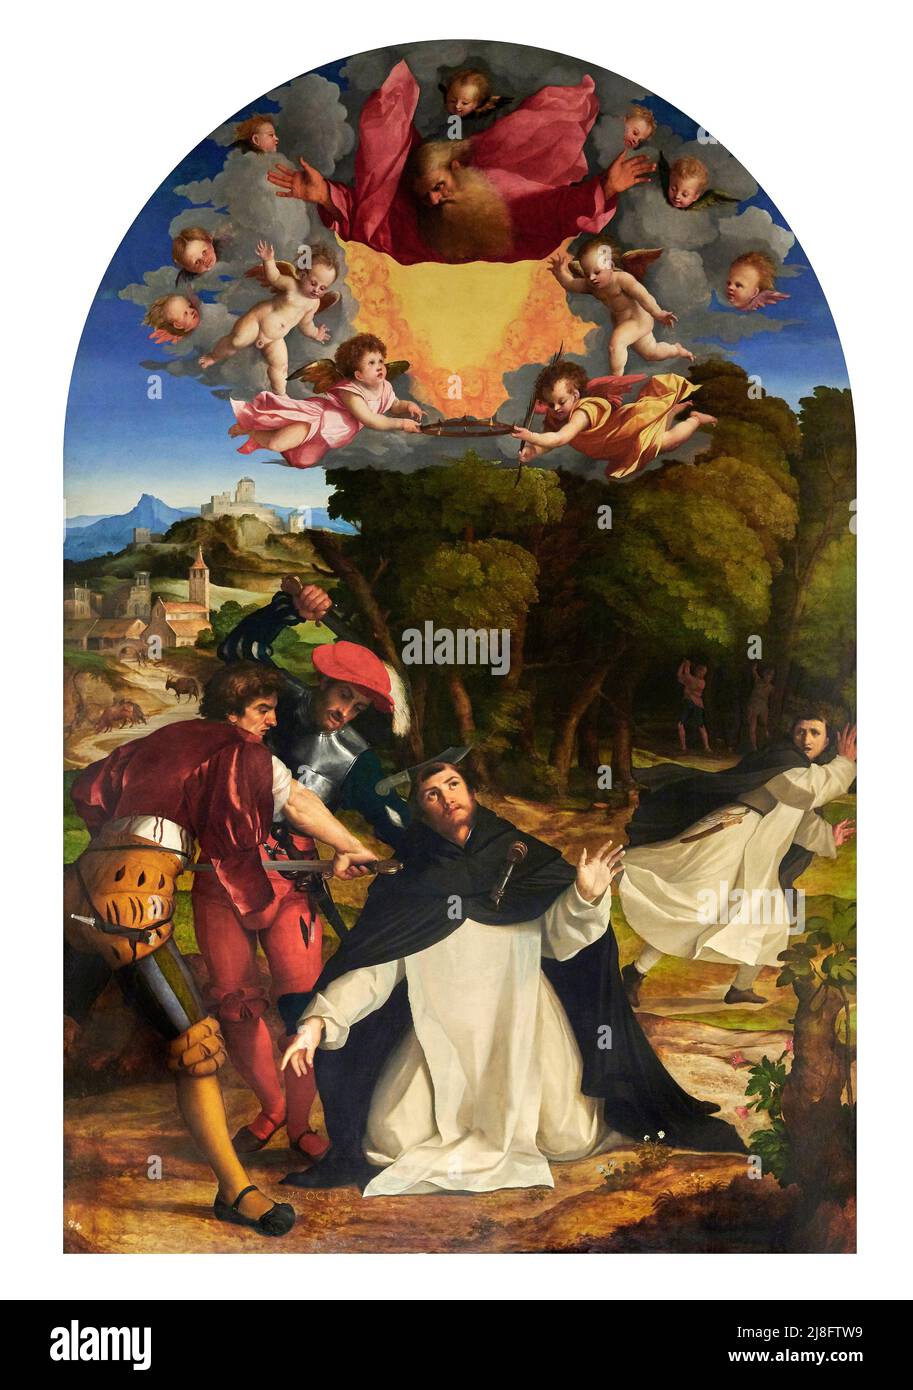 Martirio di S. Pietro da Verona - olio su tavola - Palma il Vecchio  - 1528- Alzano Lombardo (Bg),Italia, Museo d’Arte Sacra della Basilica di San Mar Stock Photo